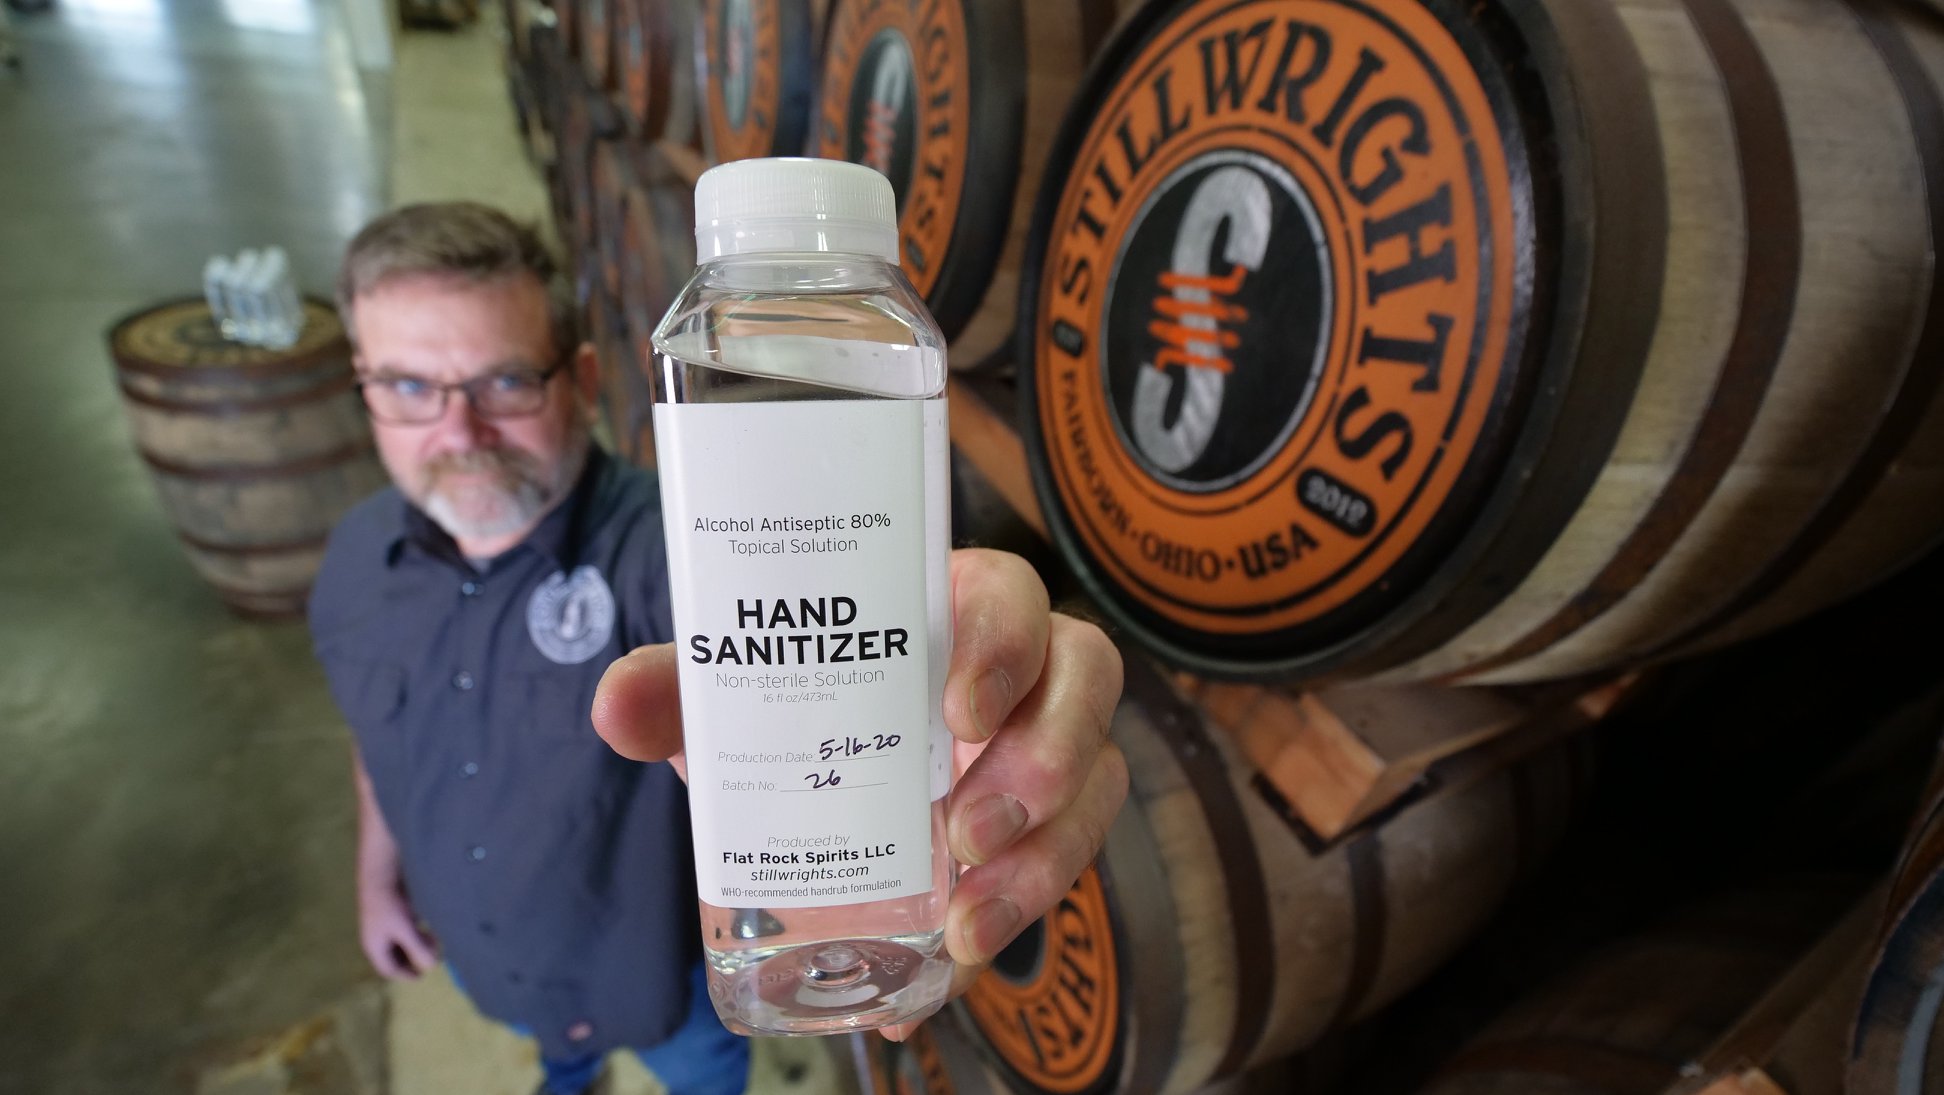 Stillwrights distillery makes hand sanitizer